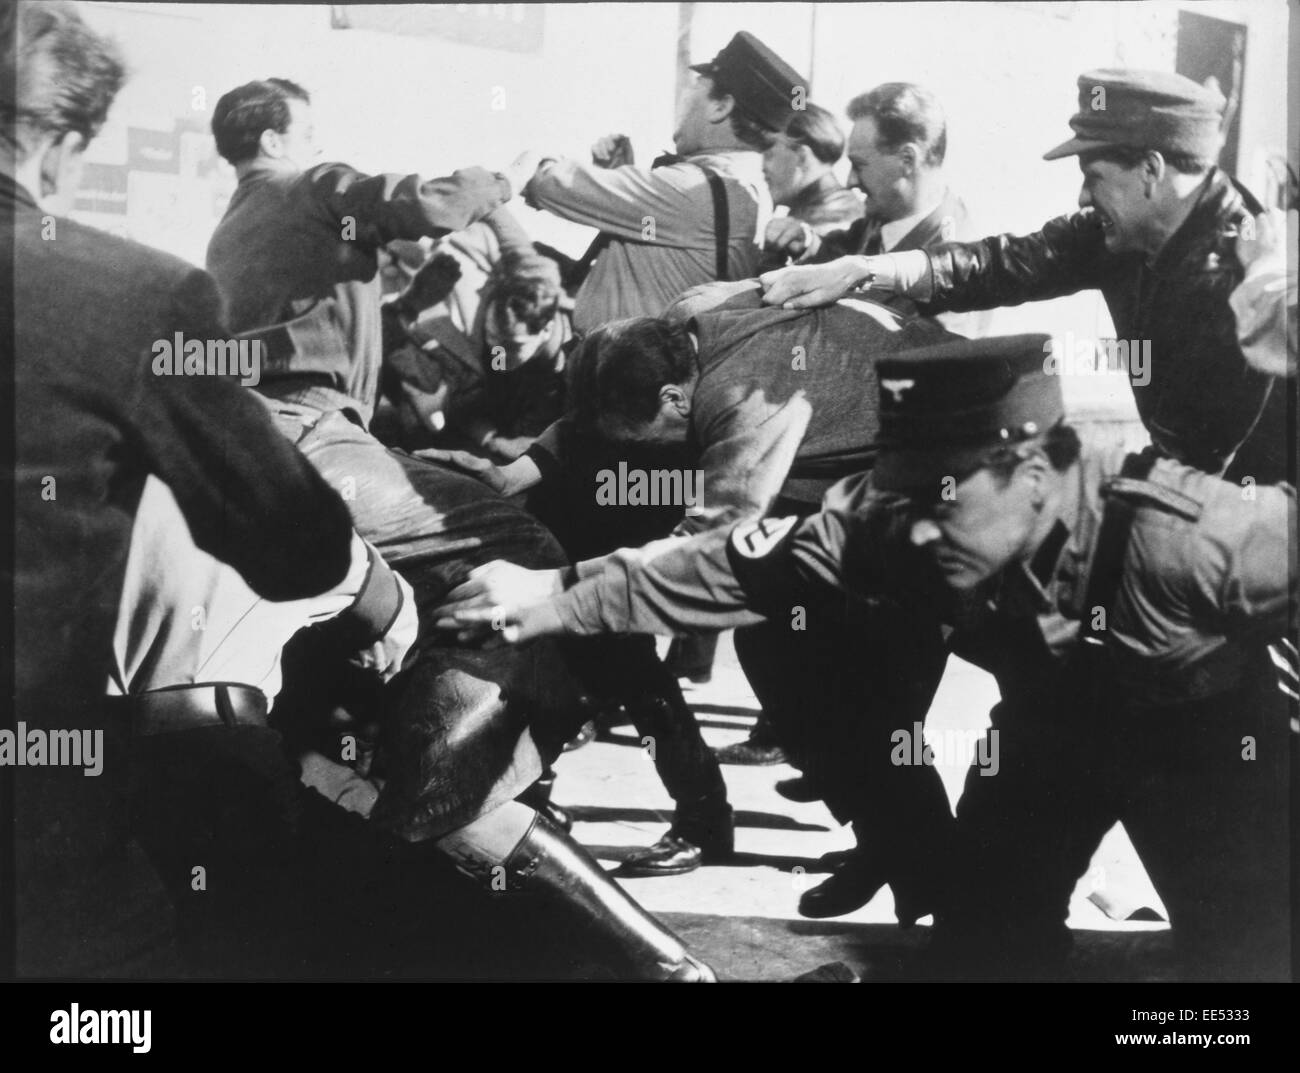 nazi-sturmabteilung-sa-troops-in-anti-semite-street-brawl-in-1933-EE5333.jpg